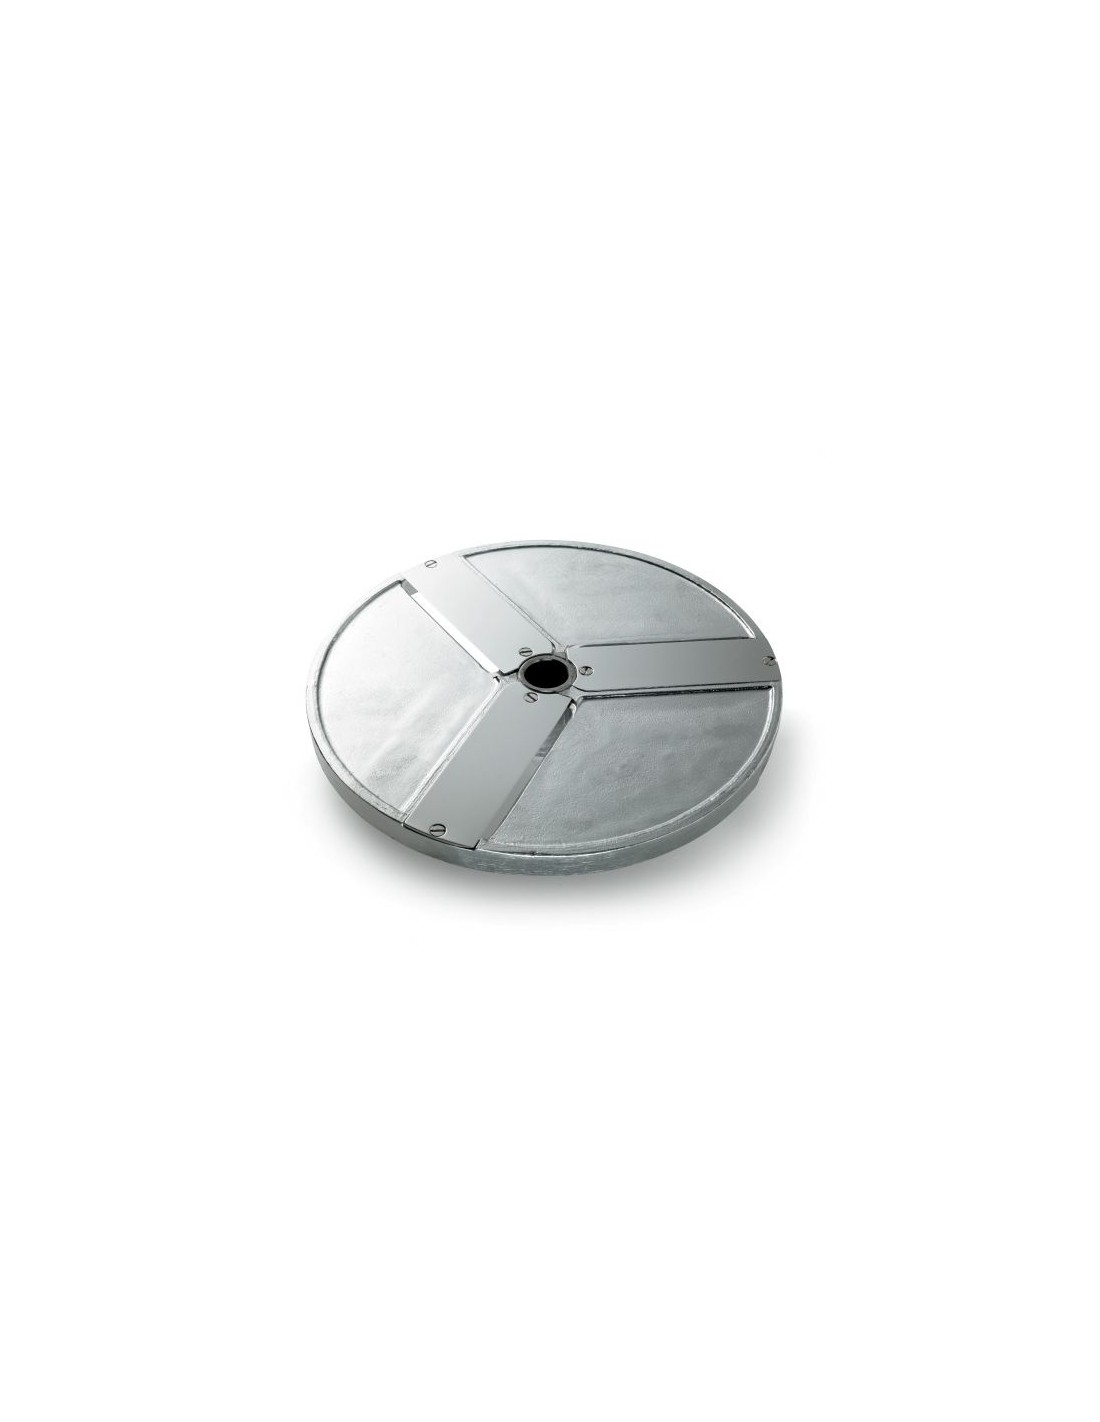 Disco para cortes - Diámetro 205 mm - Espesor de corte 20 mm